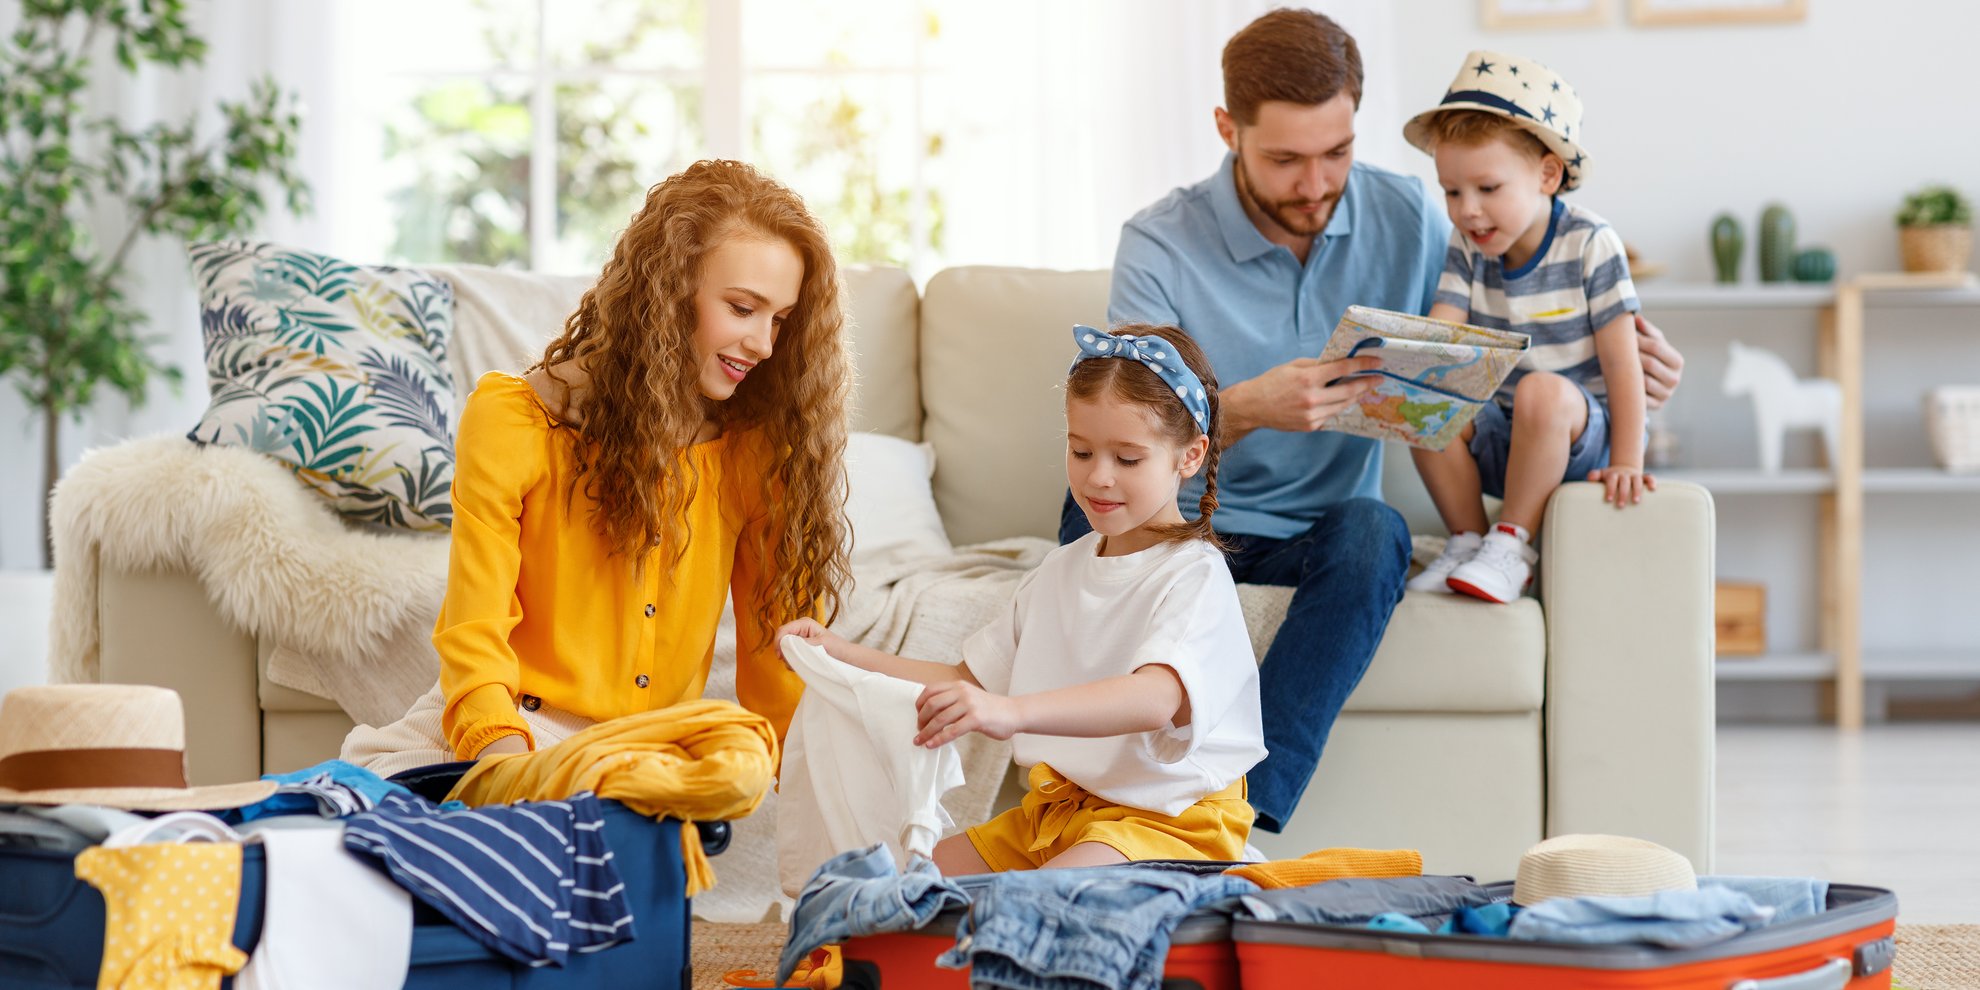 Packliste für den Familien­urlaub: 5 Check­listen zum download